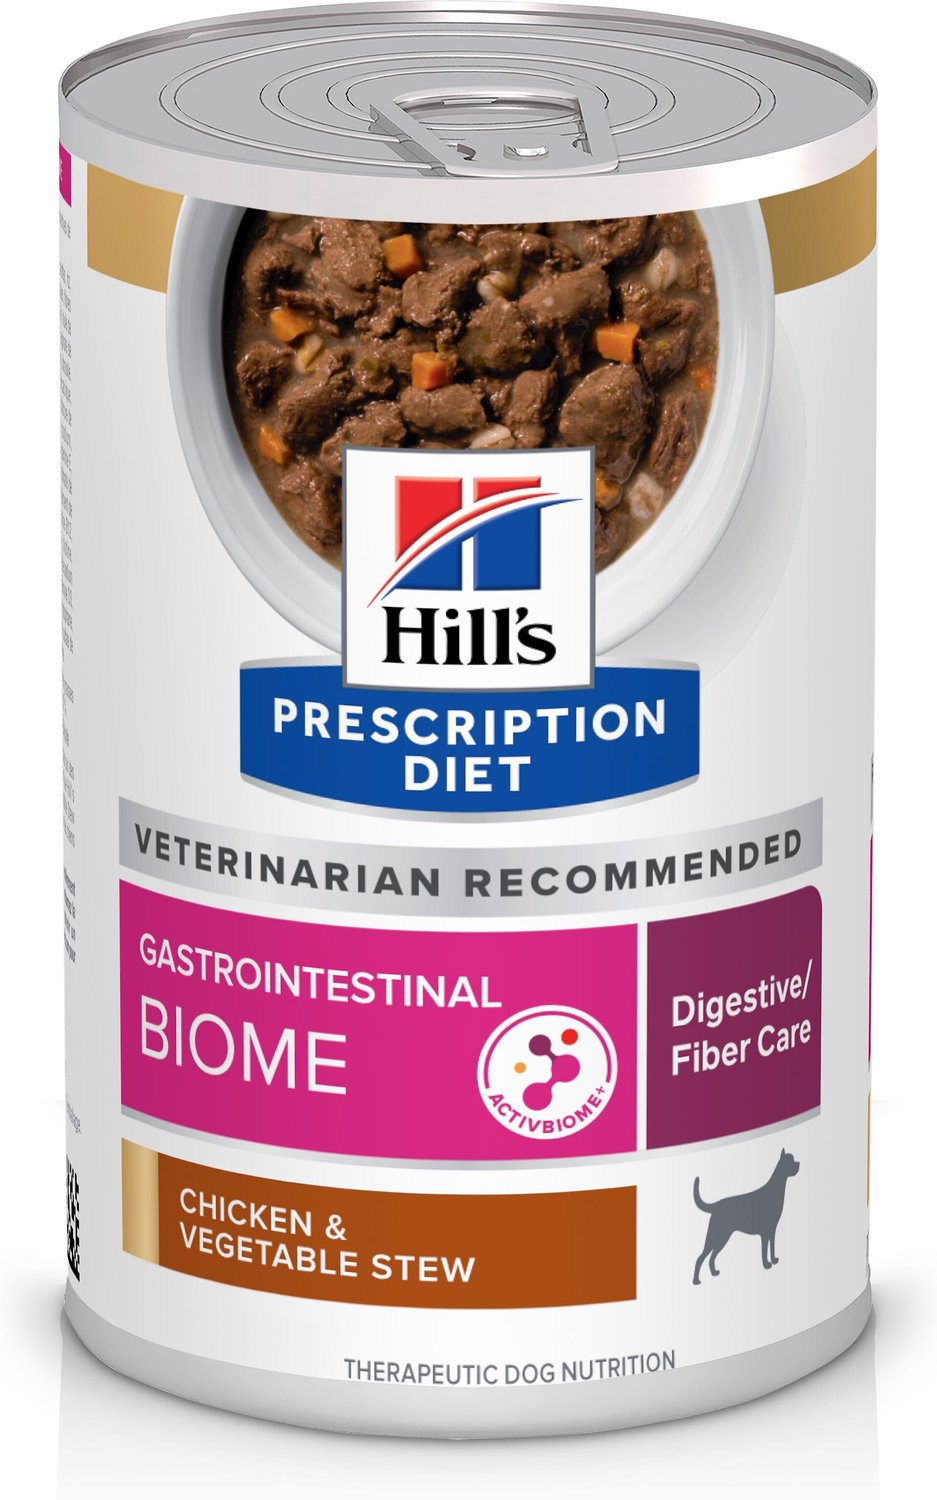 hills gi dog food